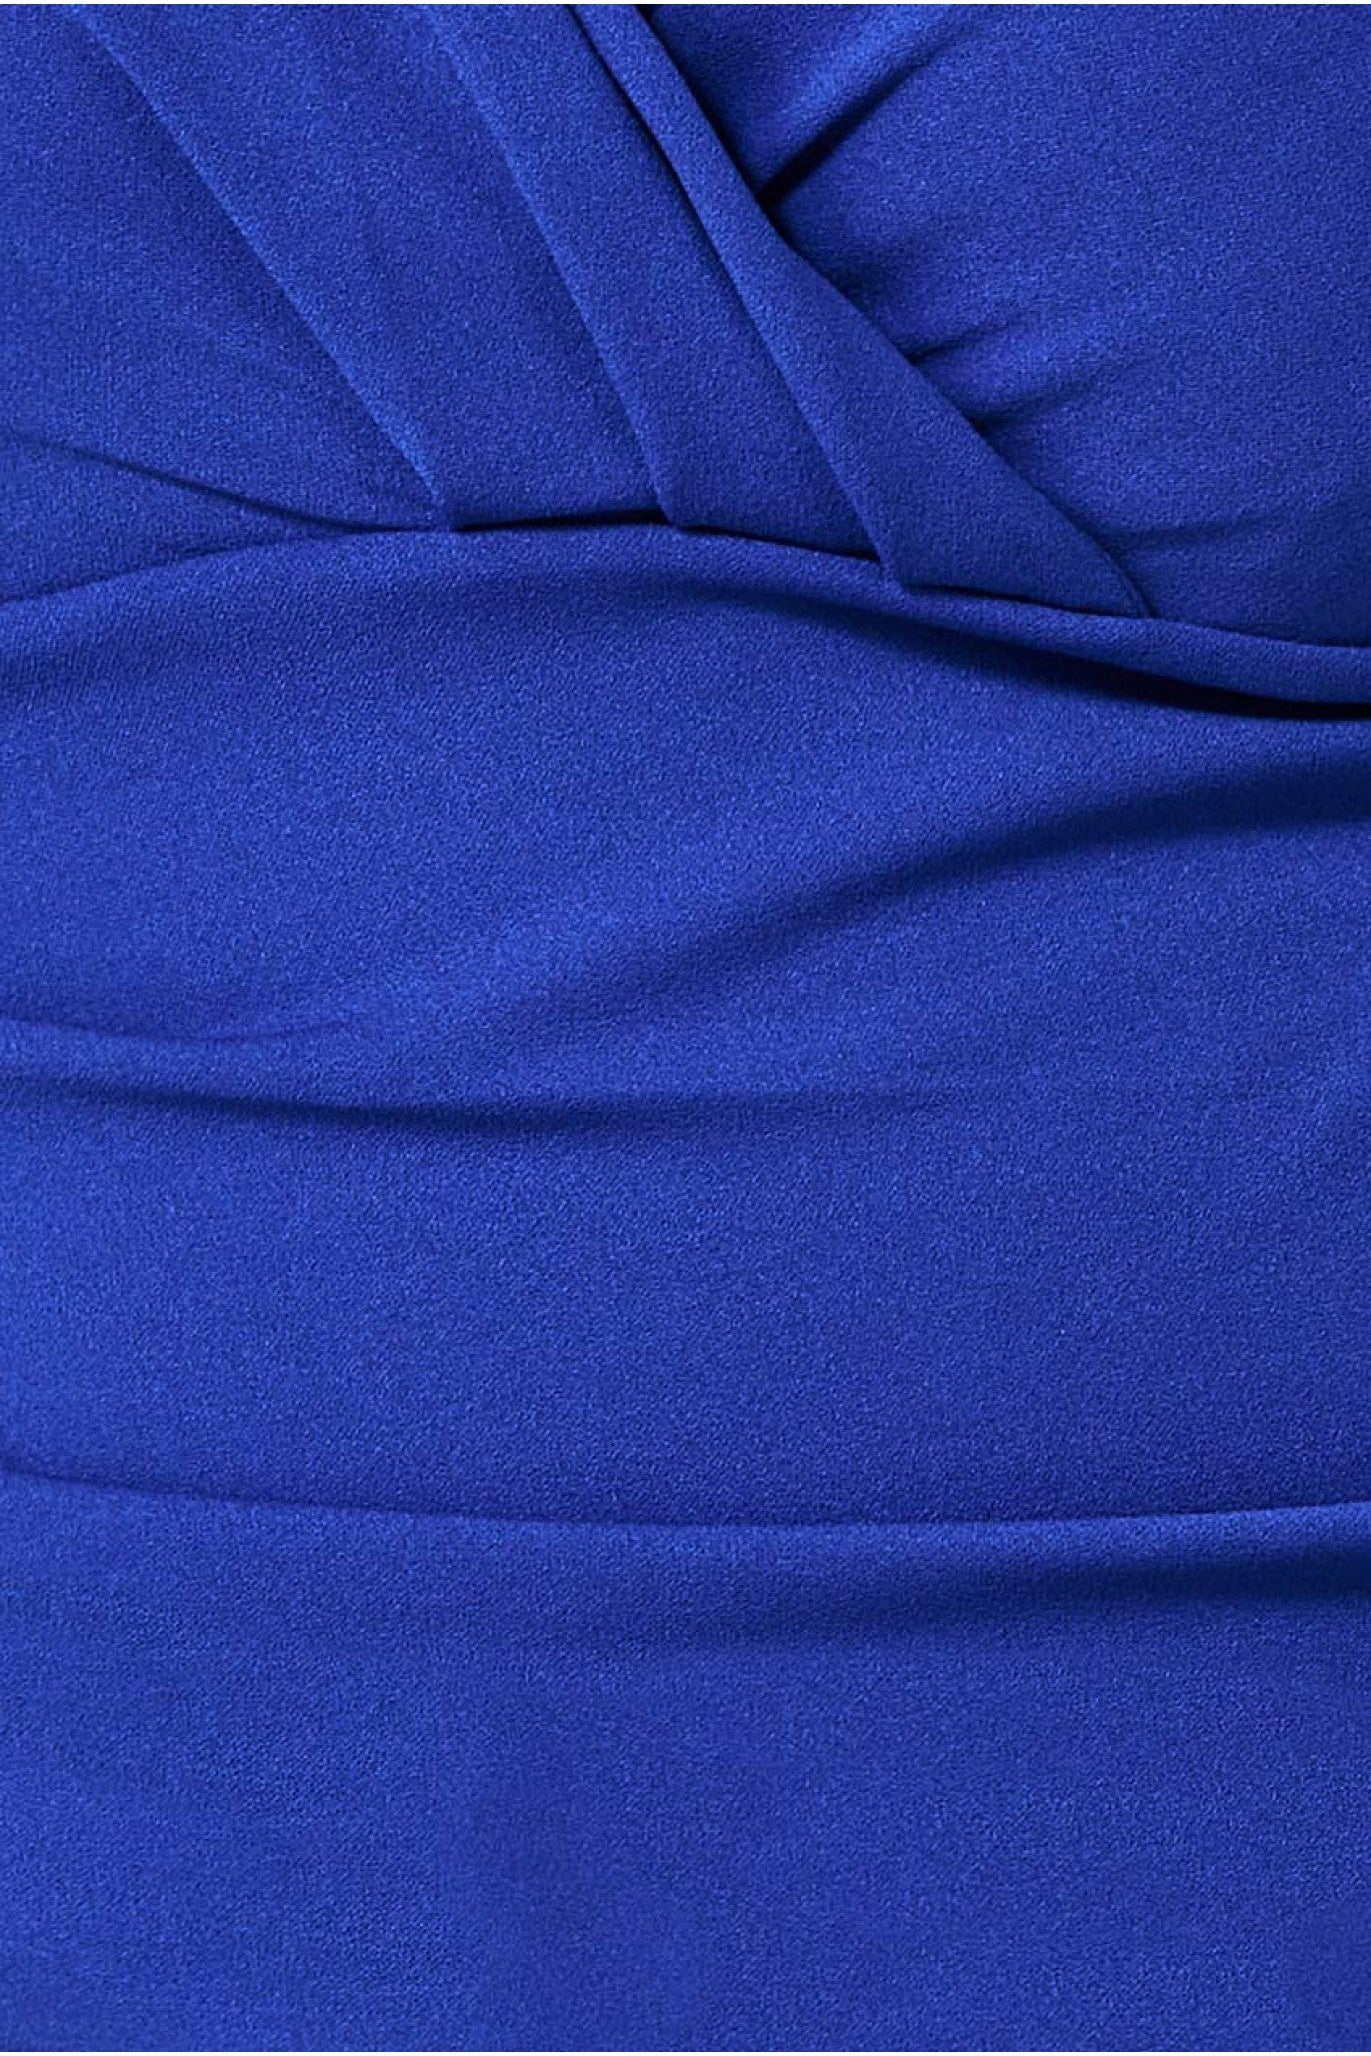 Bardot Scuba Jumpsuit - Royal Blue TR113P